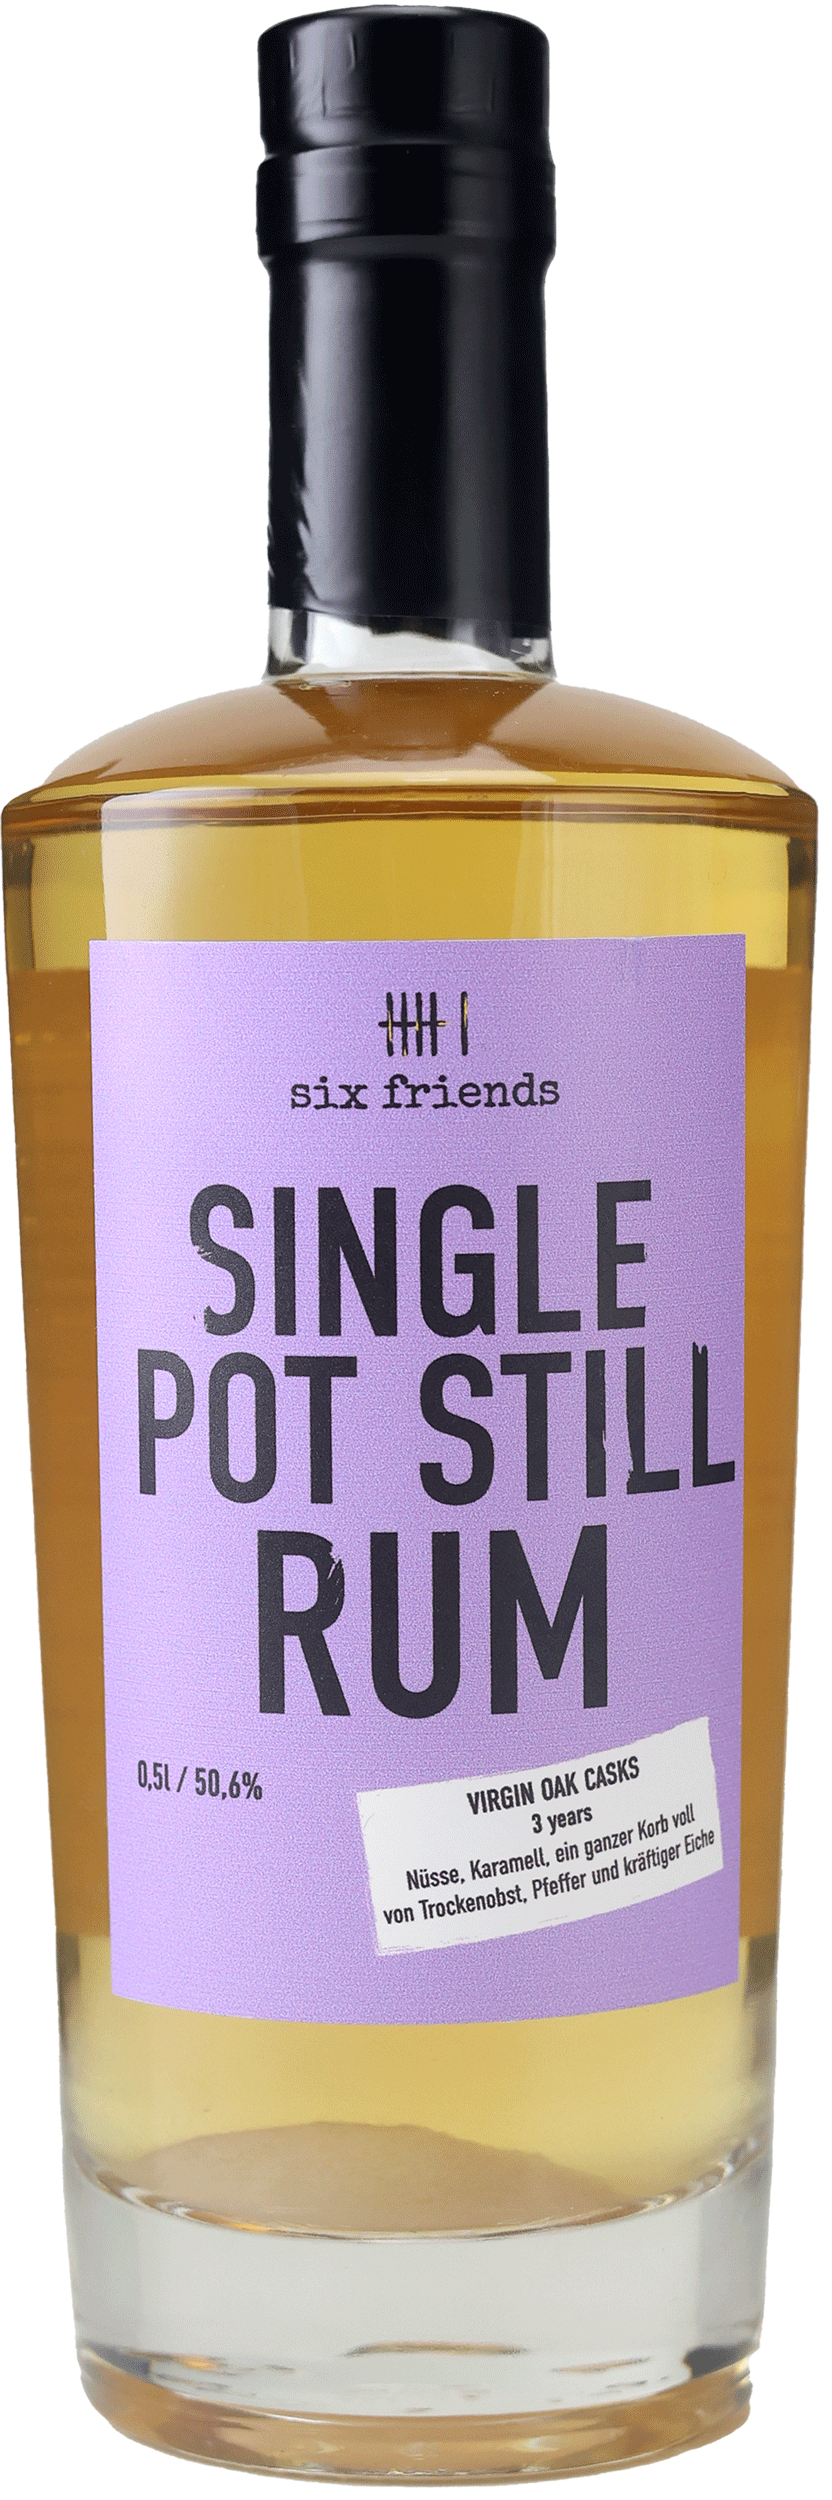 Six Friends Single Pot Still Rum 50,6% 0,5l